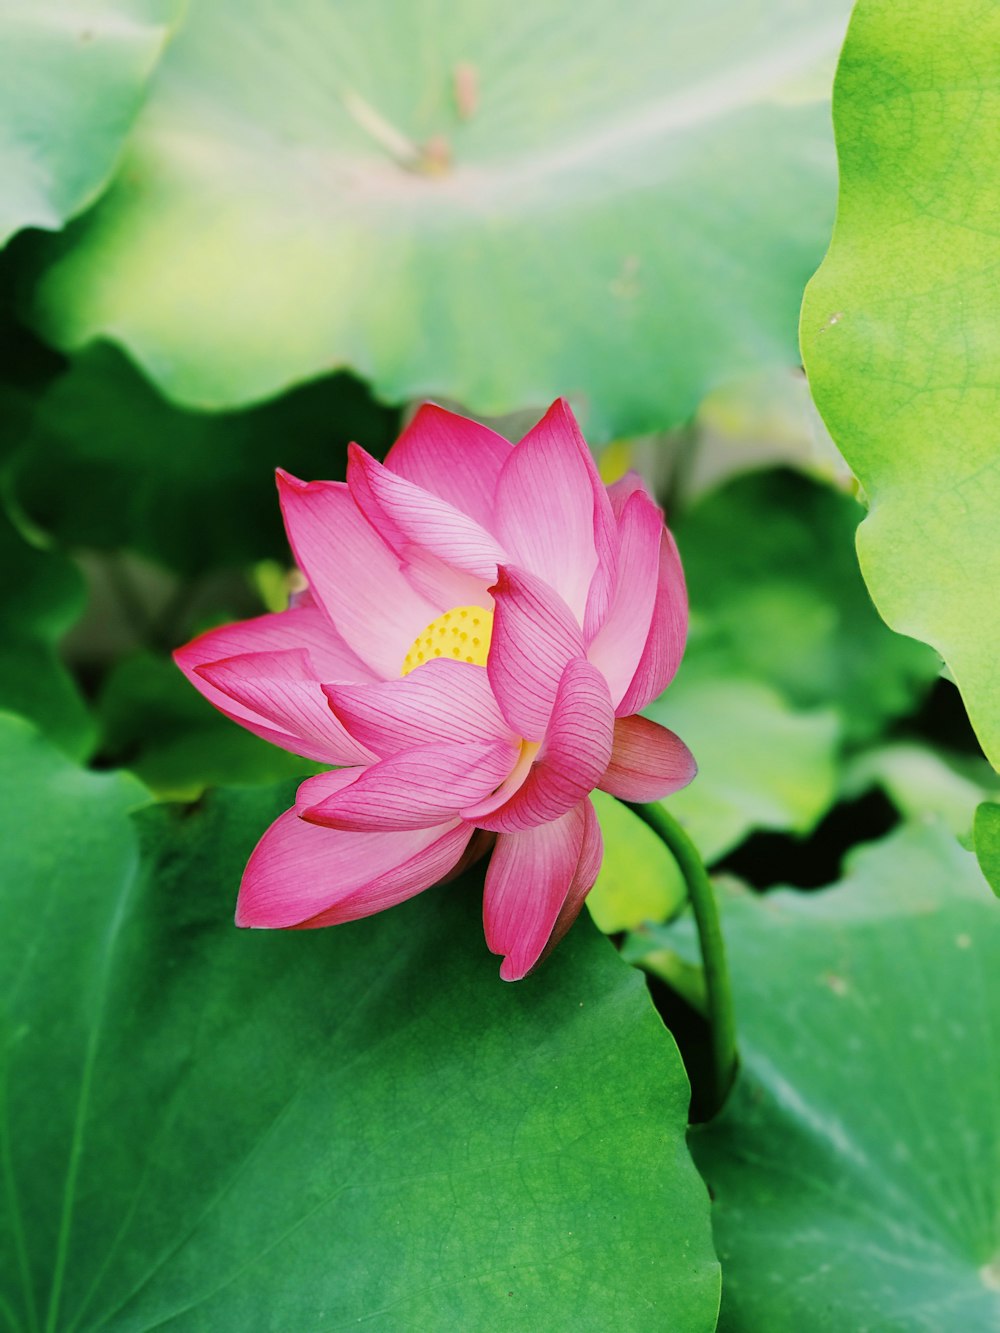 fotografia ravvicinata del fiore di loto rosa